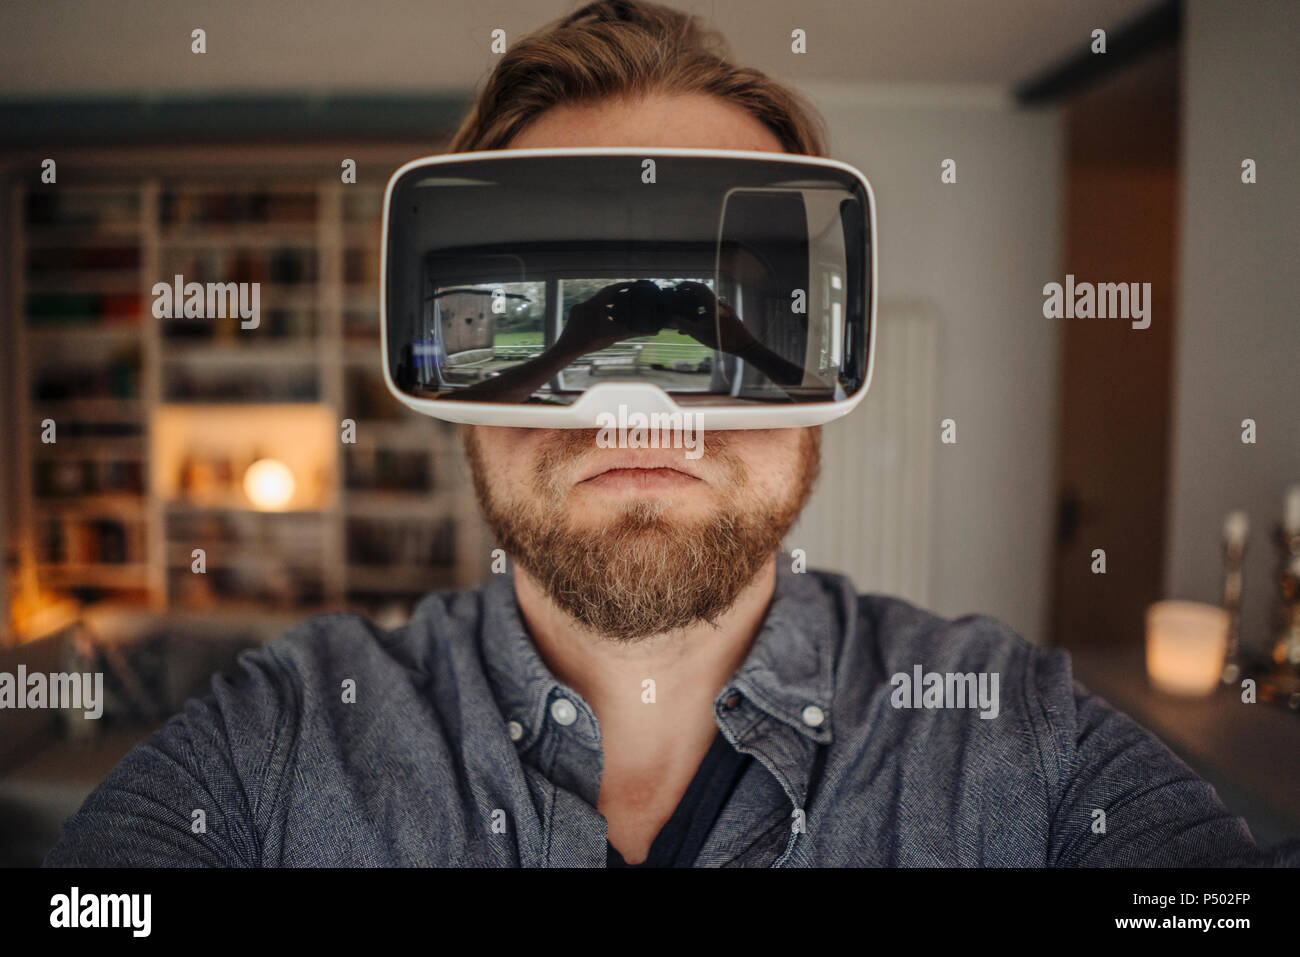 Teniendo selfie hombre maduro de sí mismo, llevar gafas VR, con un aspecto atractivo Foto de stock